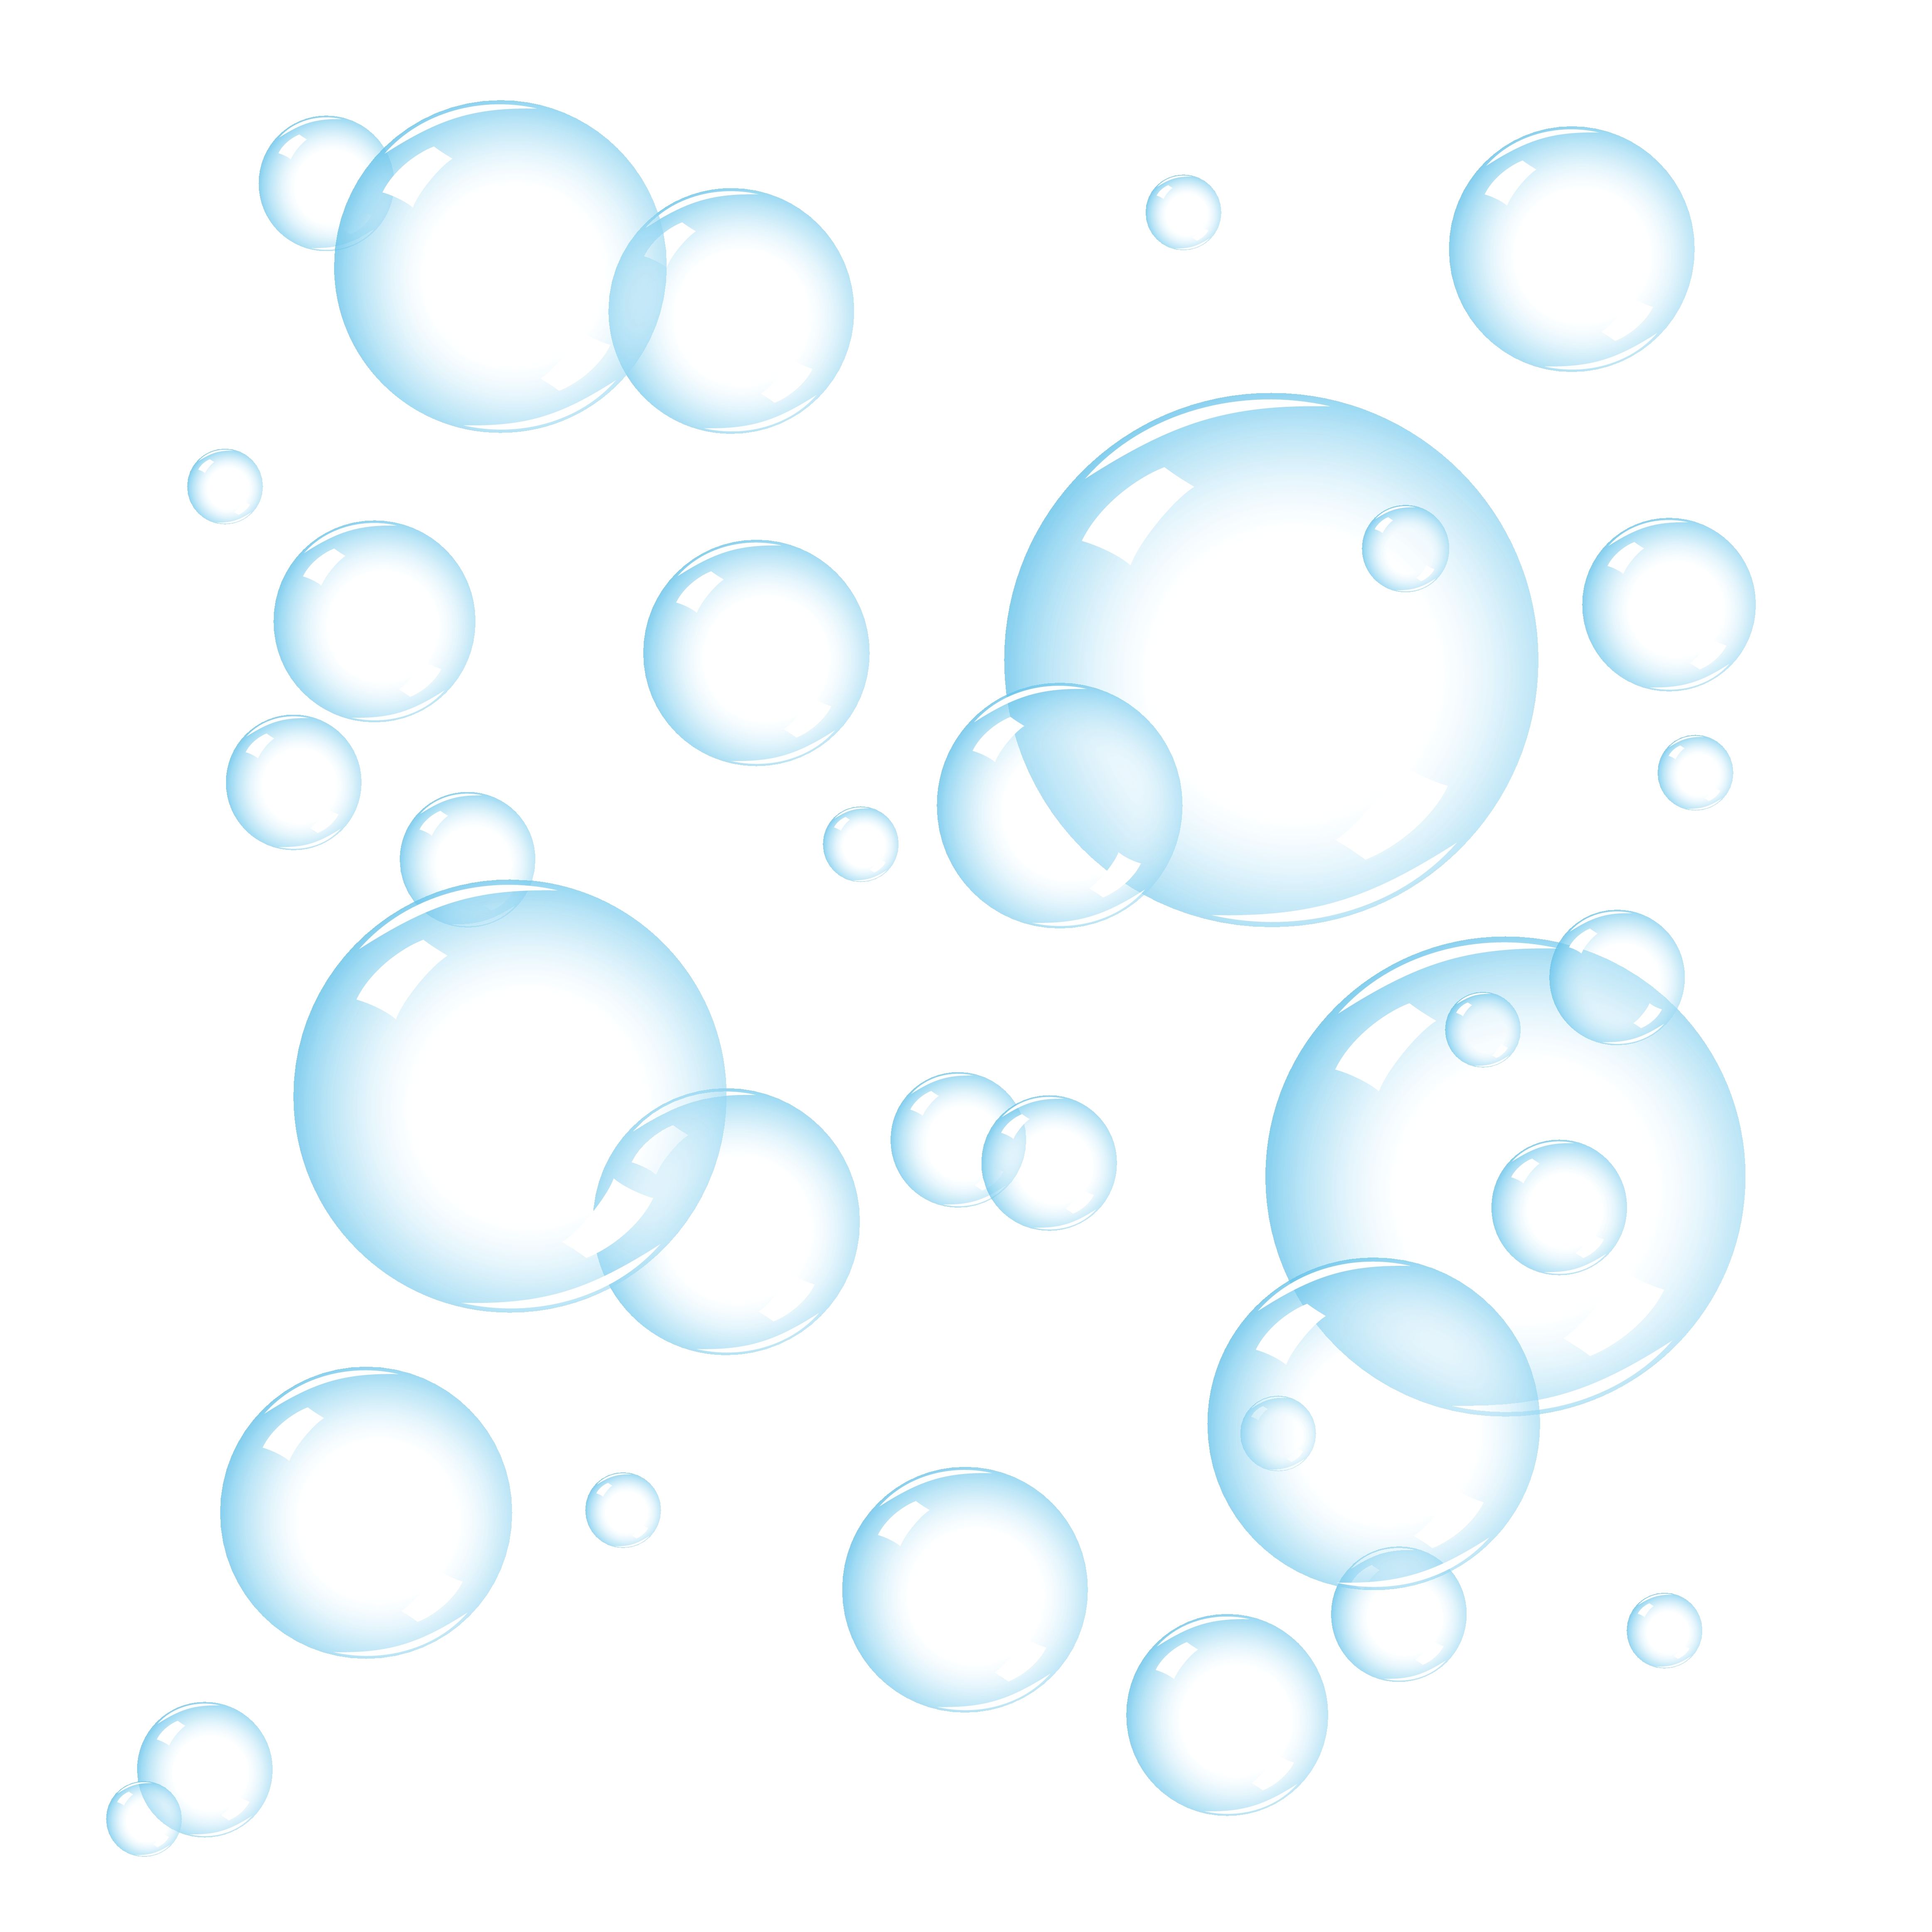 Ocean Bubbles Clipart Image